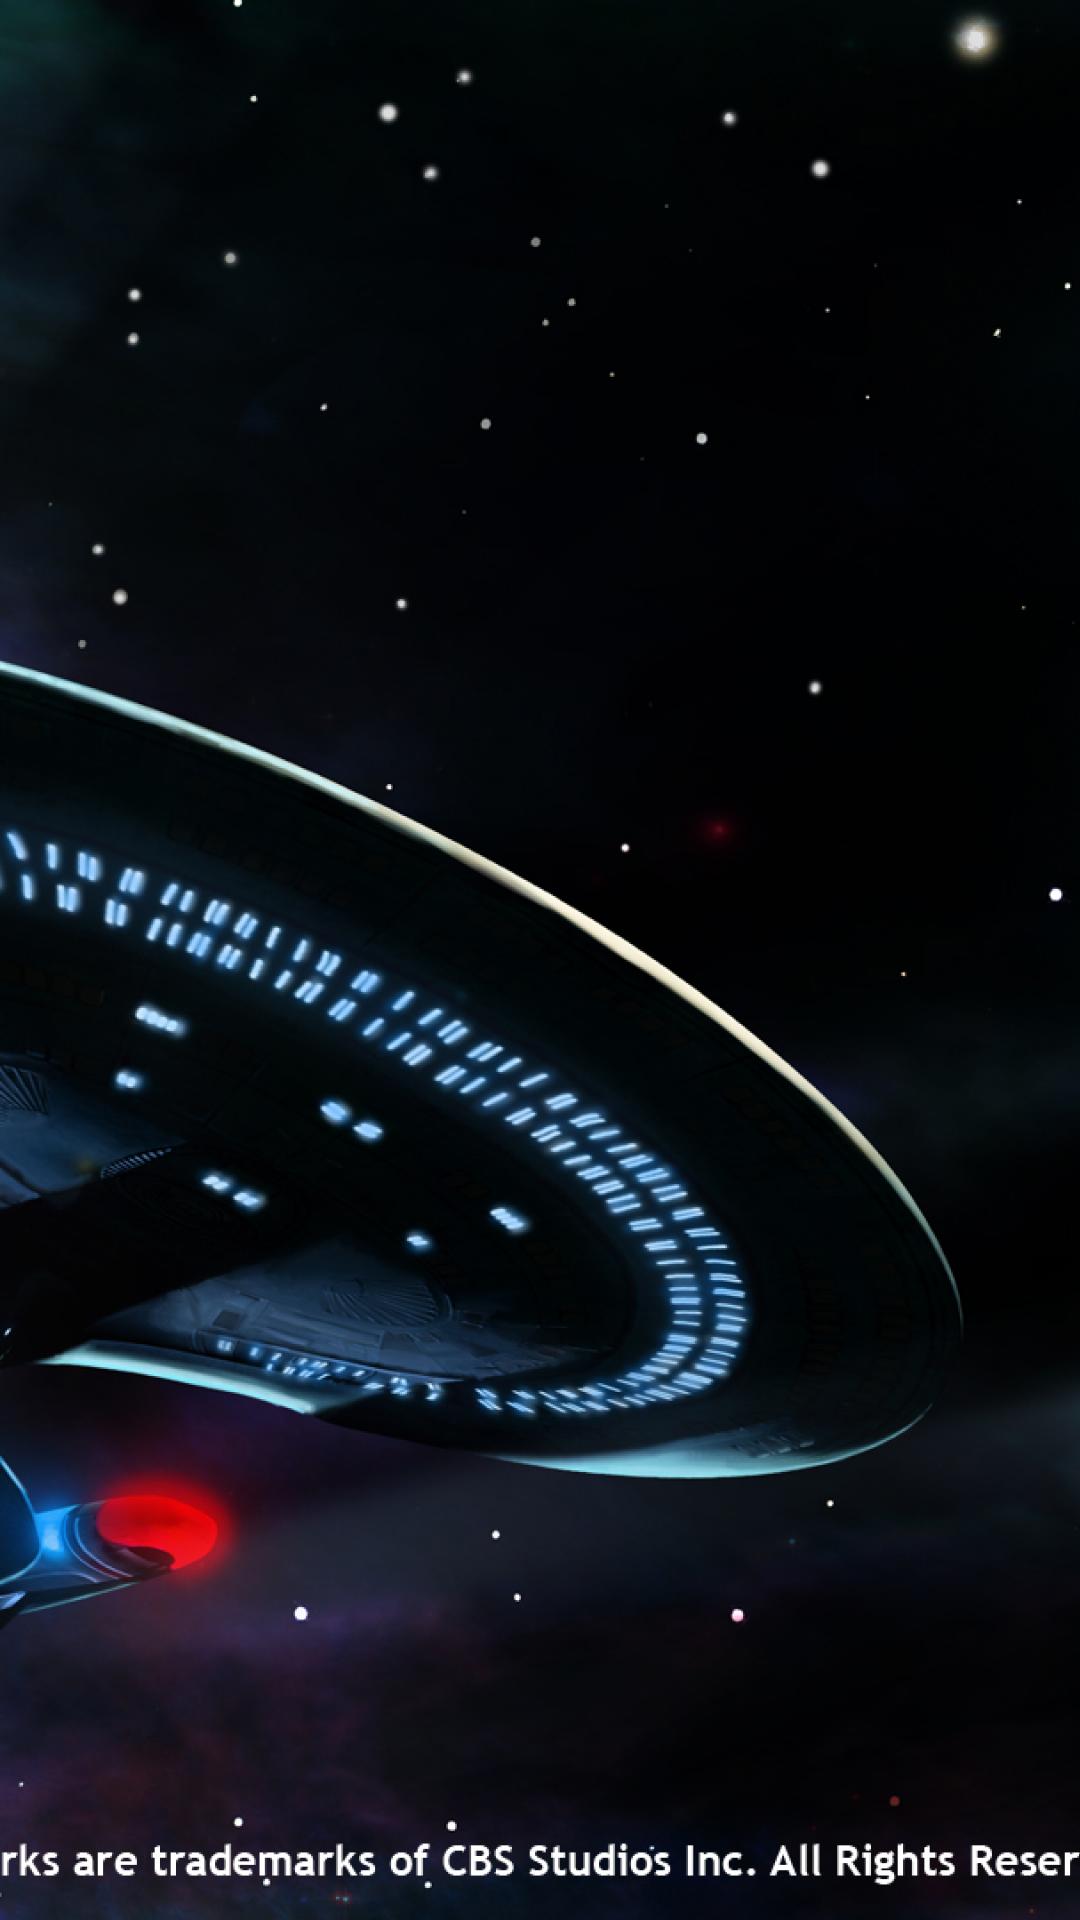 Star Trek Uss Enterprise